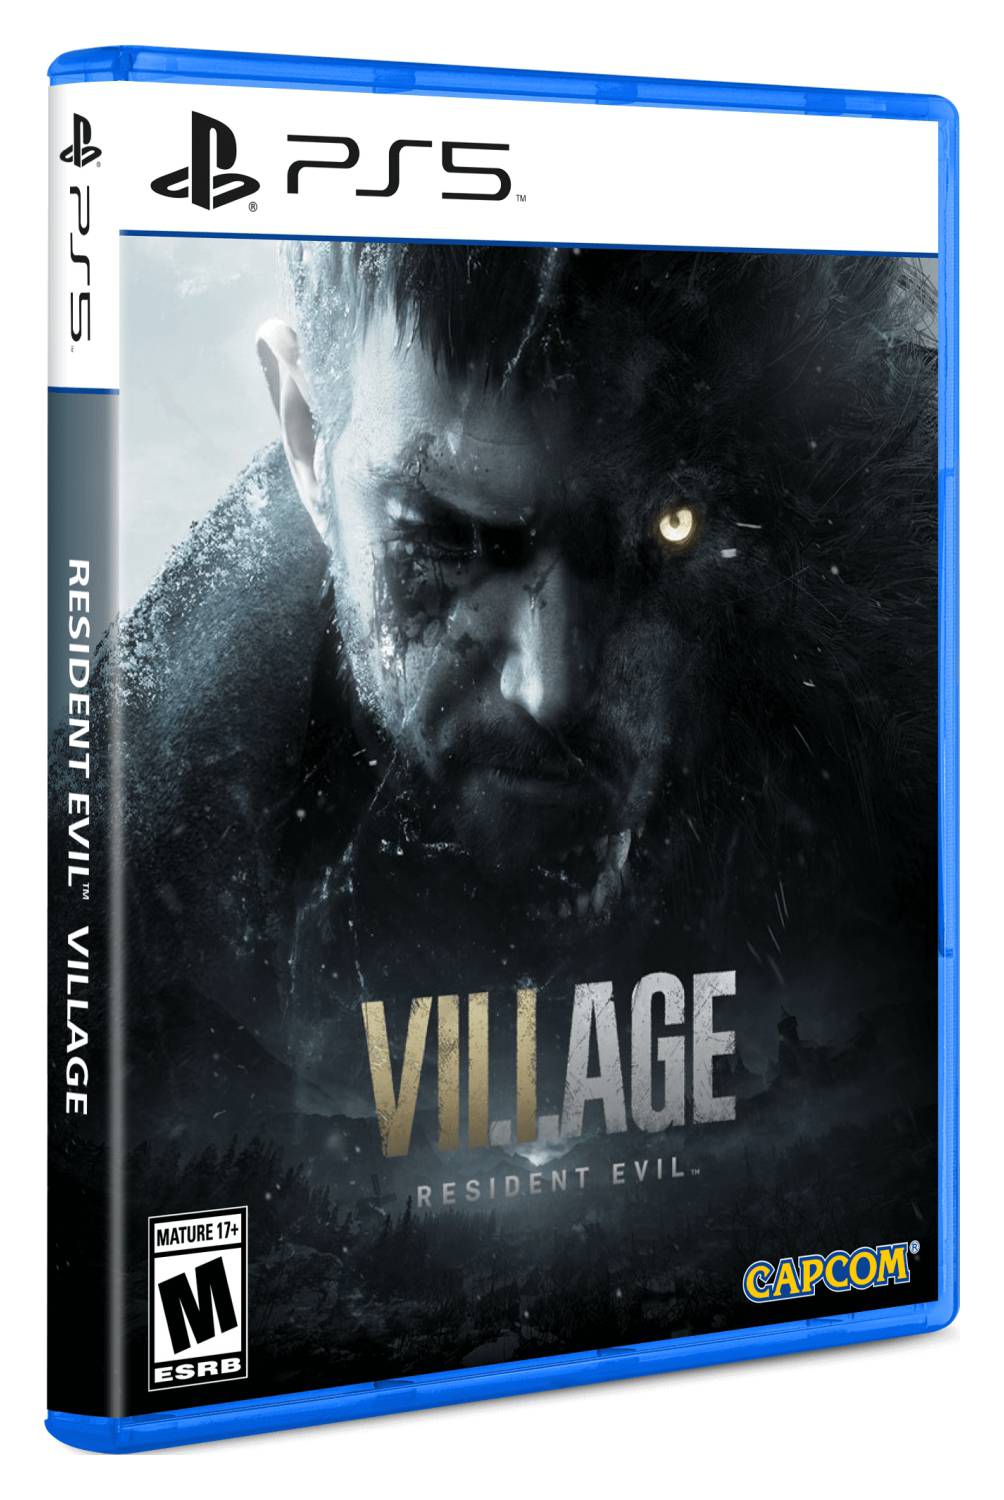 PLAYSTATION - Videojuego Residen Evil Village Video Juego Consola Playstation 5 PS5 Idioma Español Capcom